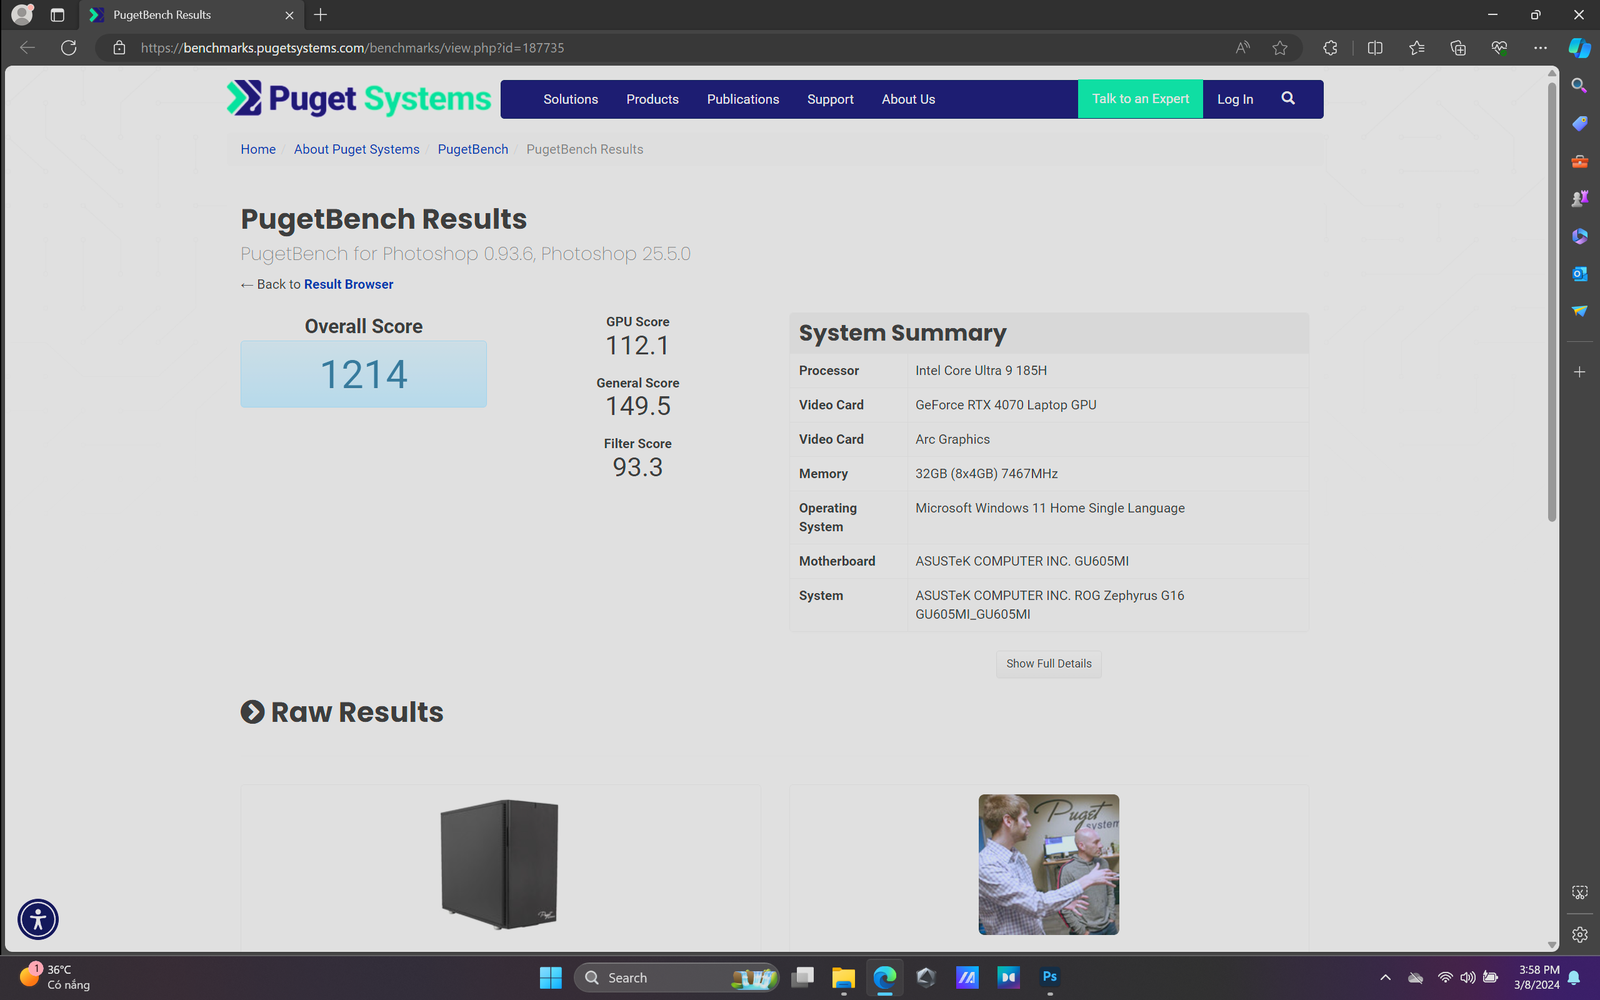 ROG Zephyrus G16 Pudget bench result MMOSITE - Thông tin công nghệ, review, thủ thuật PC, gaming